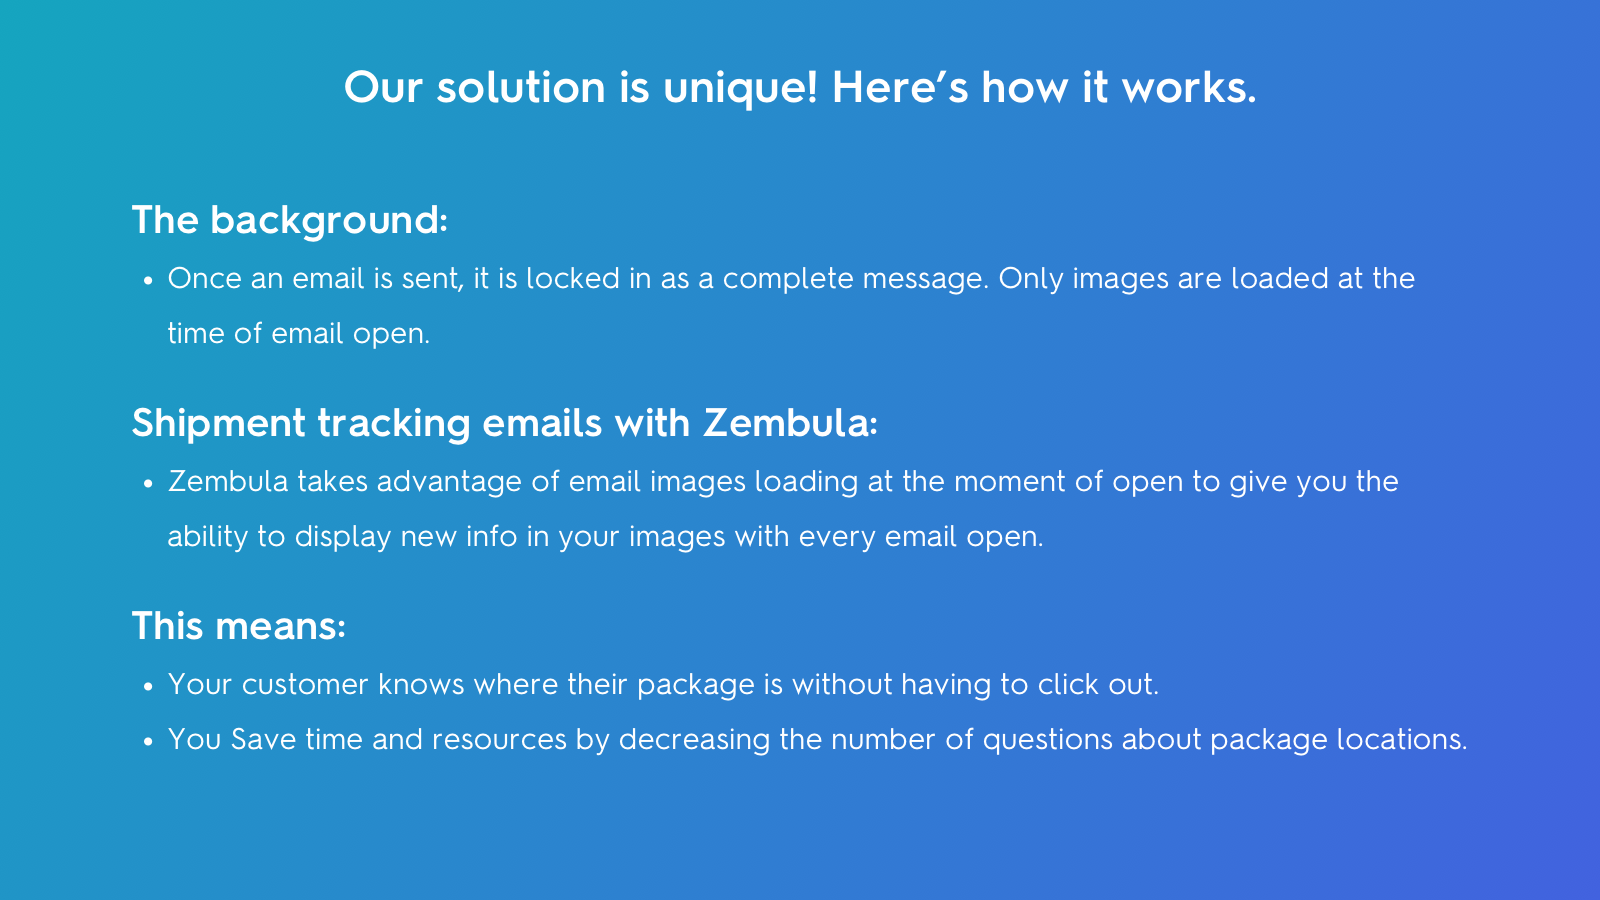 So funktioniert Zembula: Bilder werden bei jedem Öffnen einer E-Mail geladen. 